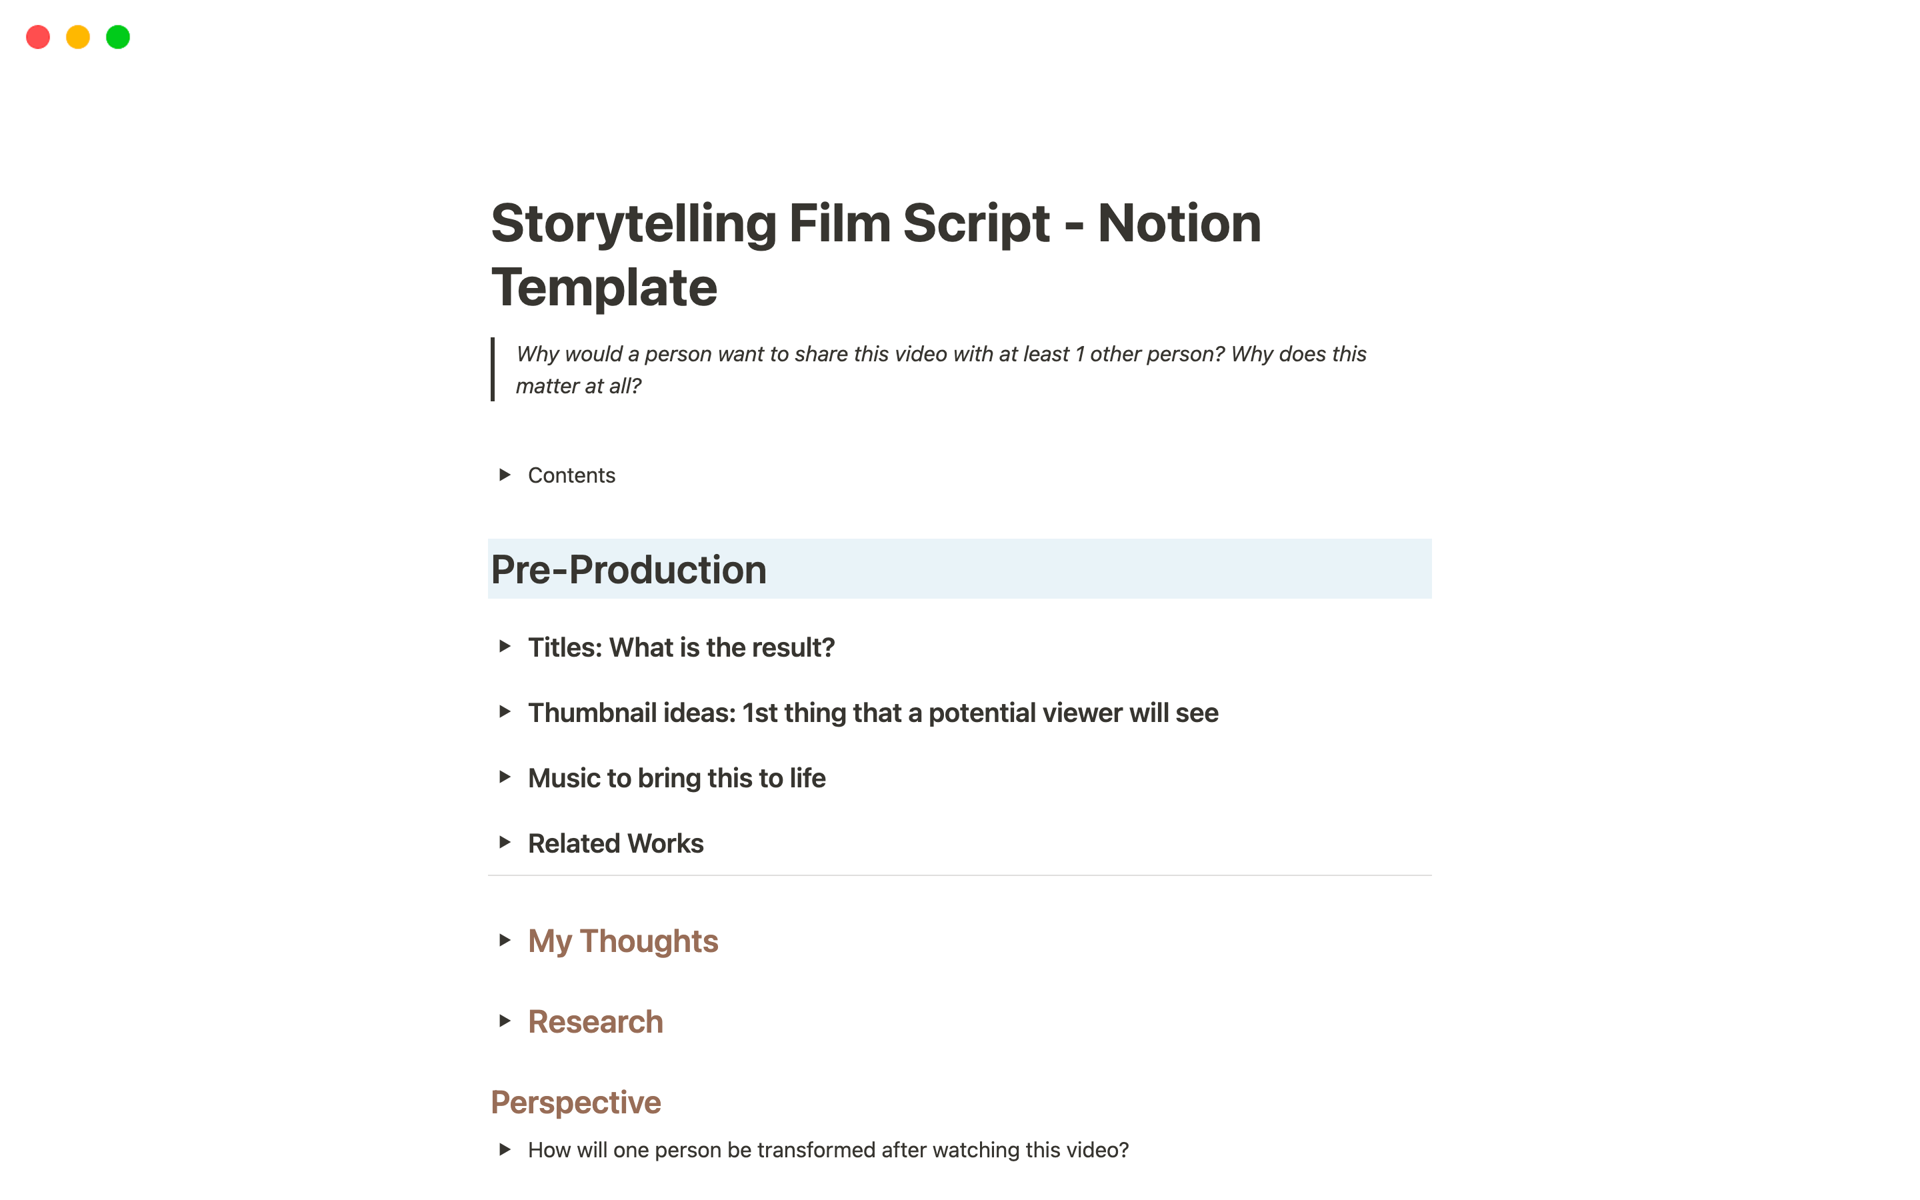 Production script